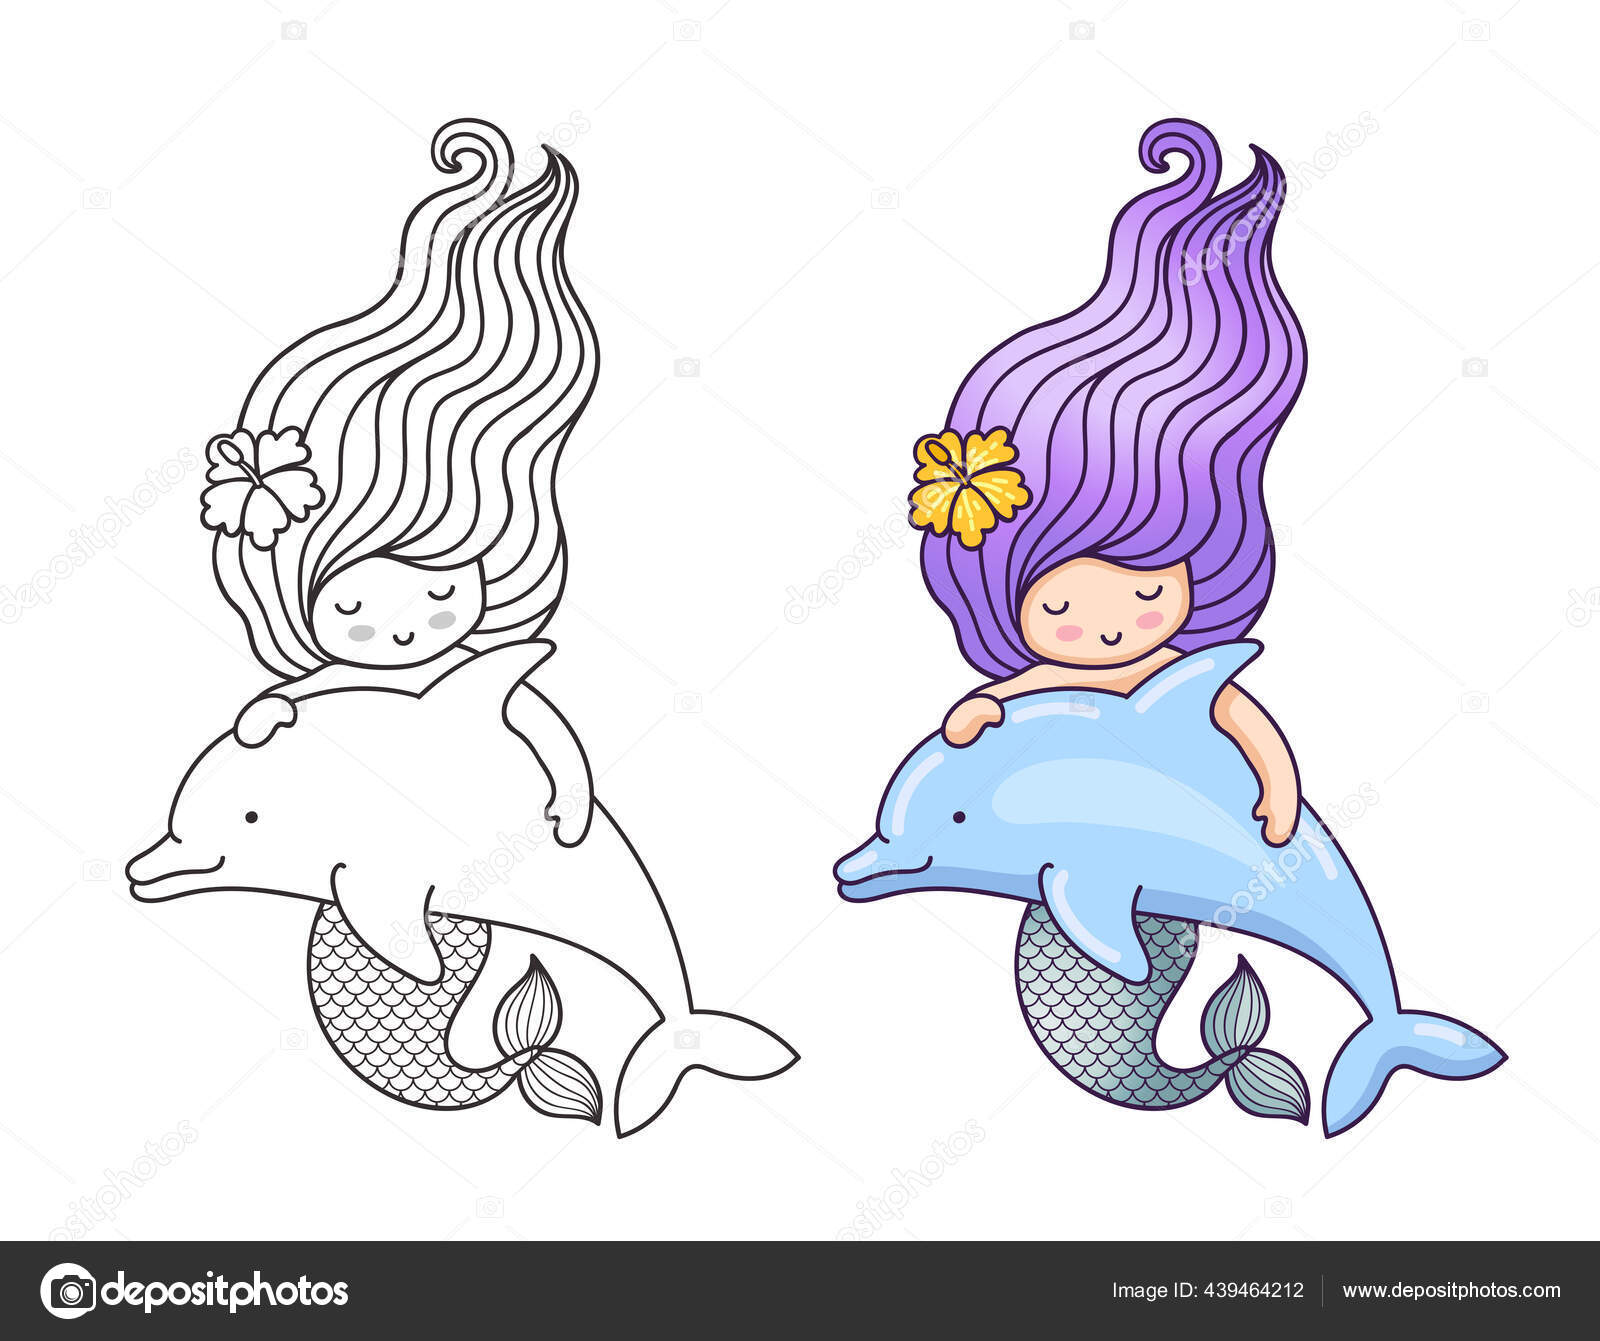 Mergulhe no mundo mágico das princesas do mar Desenhos para colorir